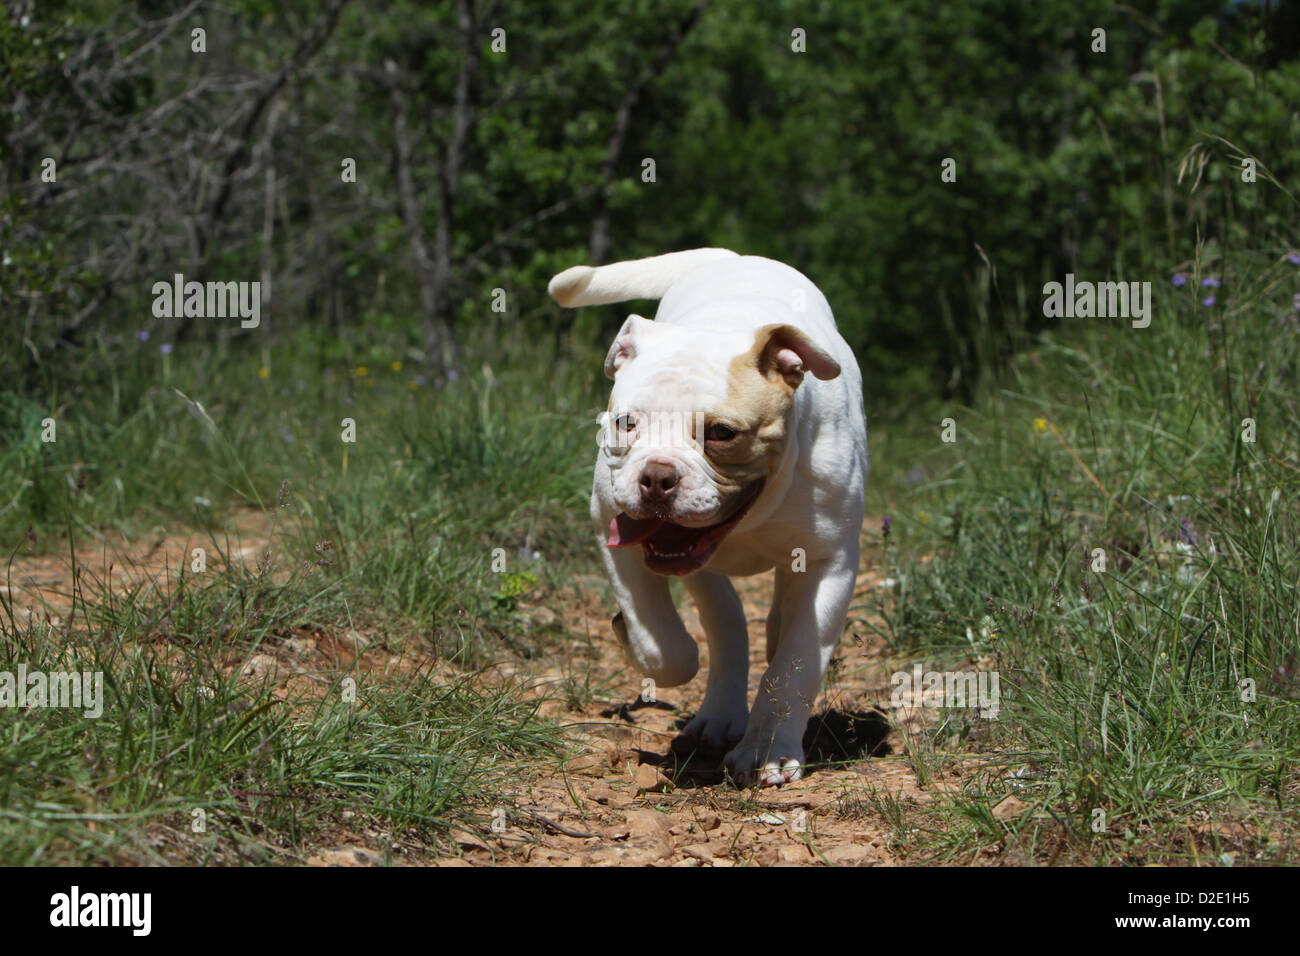 Perro bulldog americano / Bully cachorro ejecutando Foto de stock